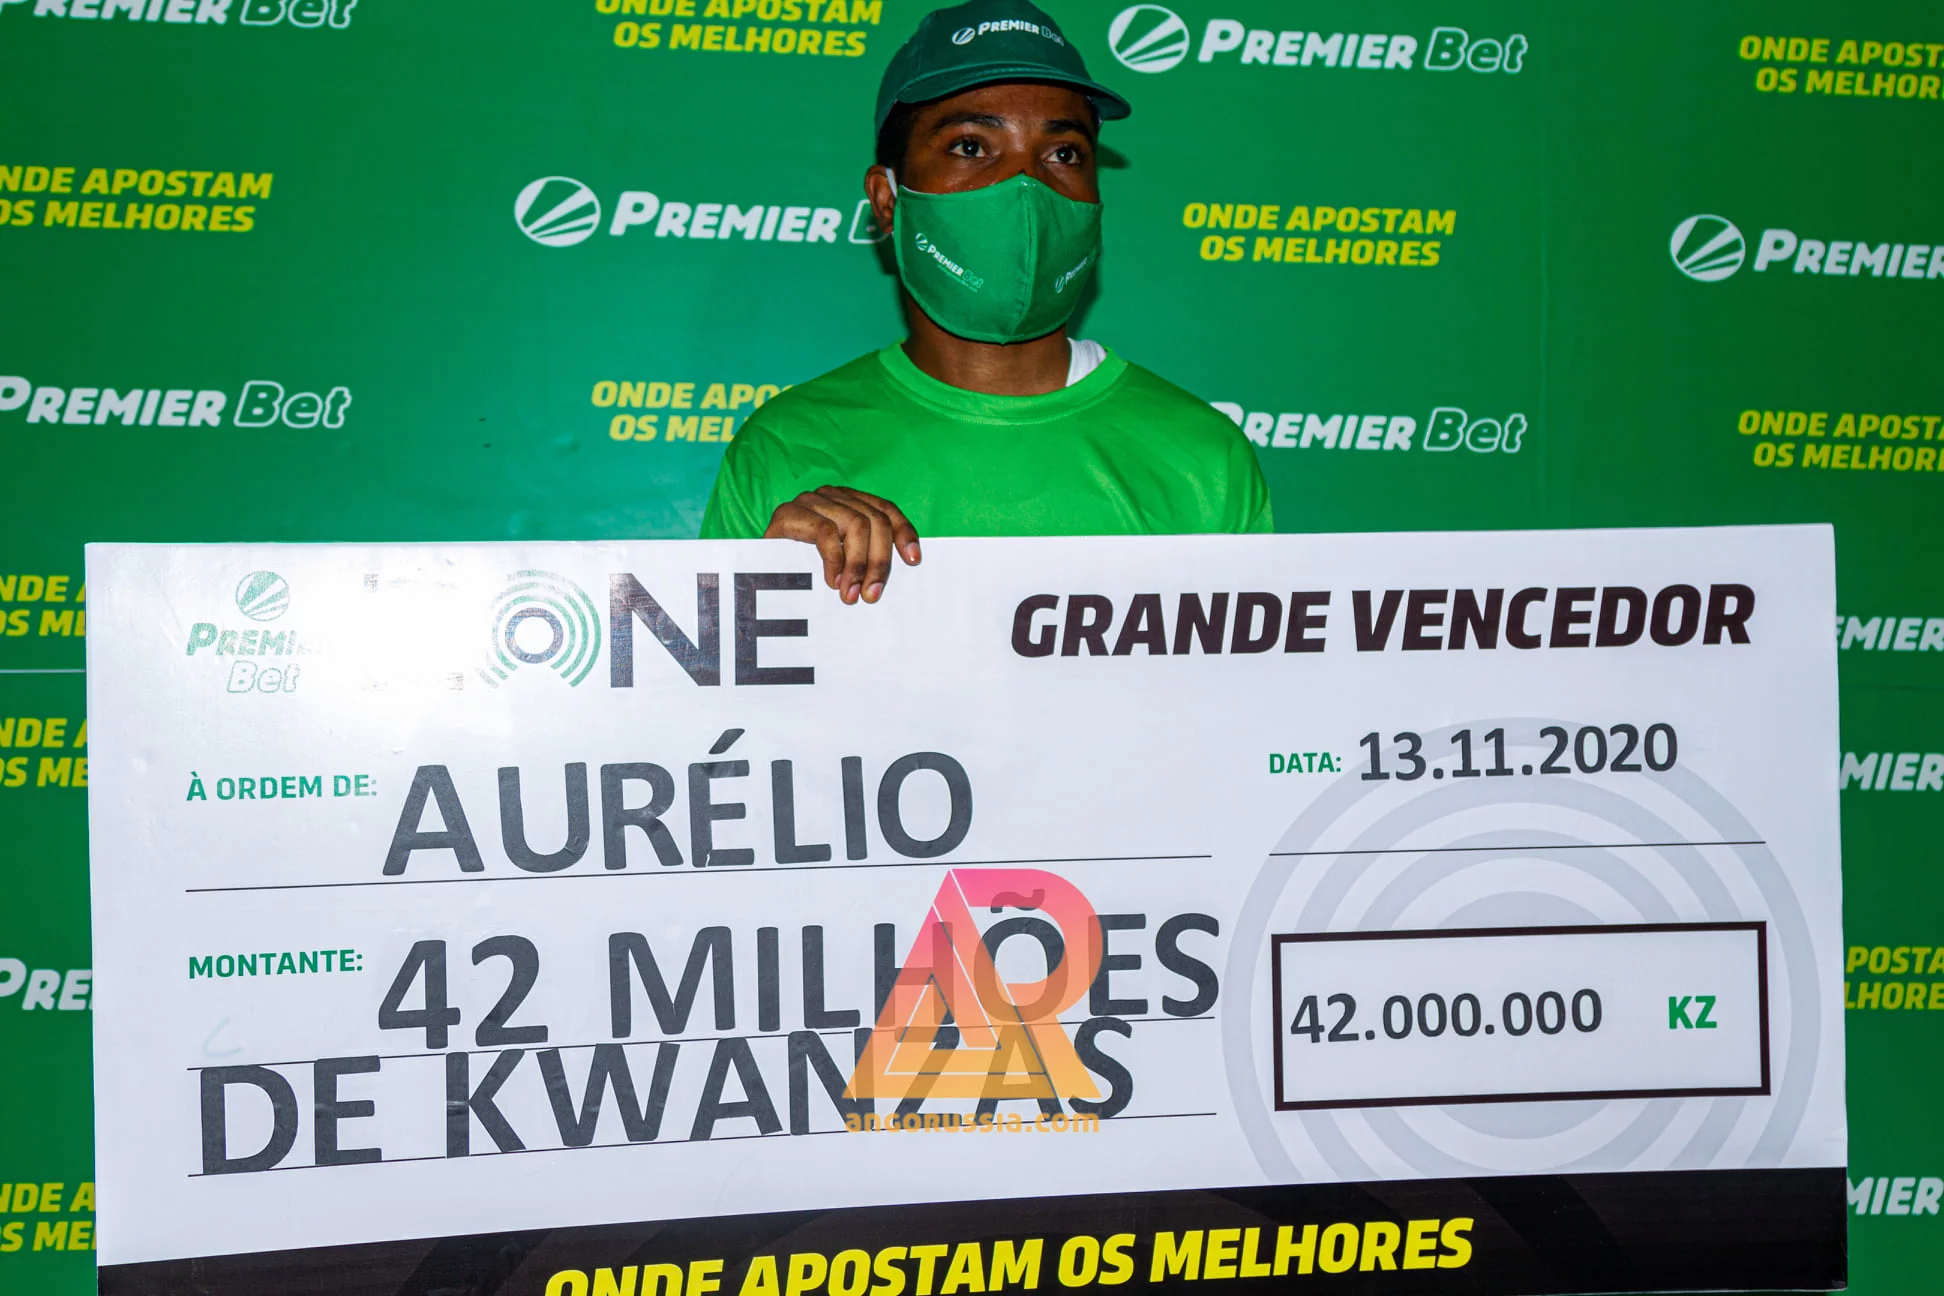 Aurélio da Cruz aposta 350 Kwanzas e ganha 42 milhões no Premier Bet 